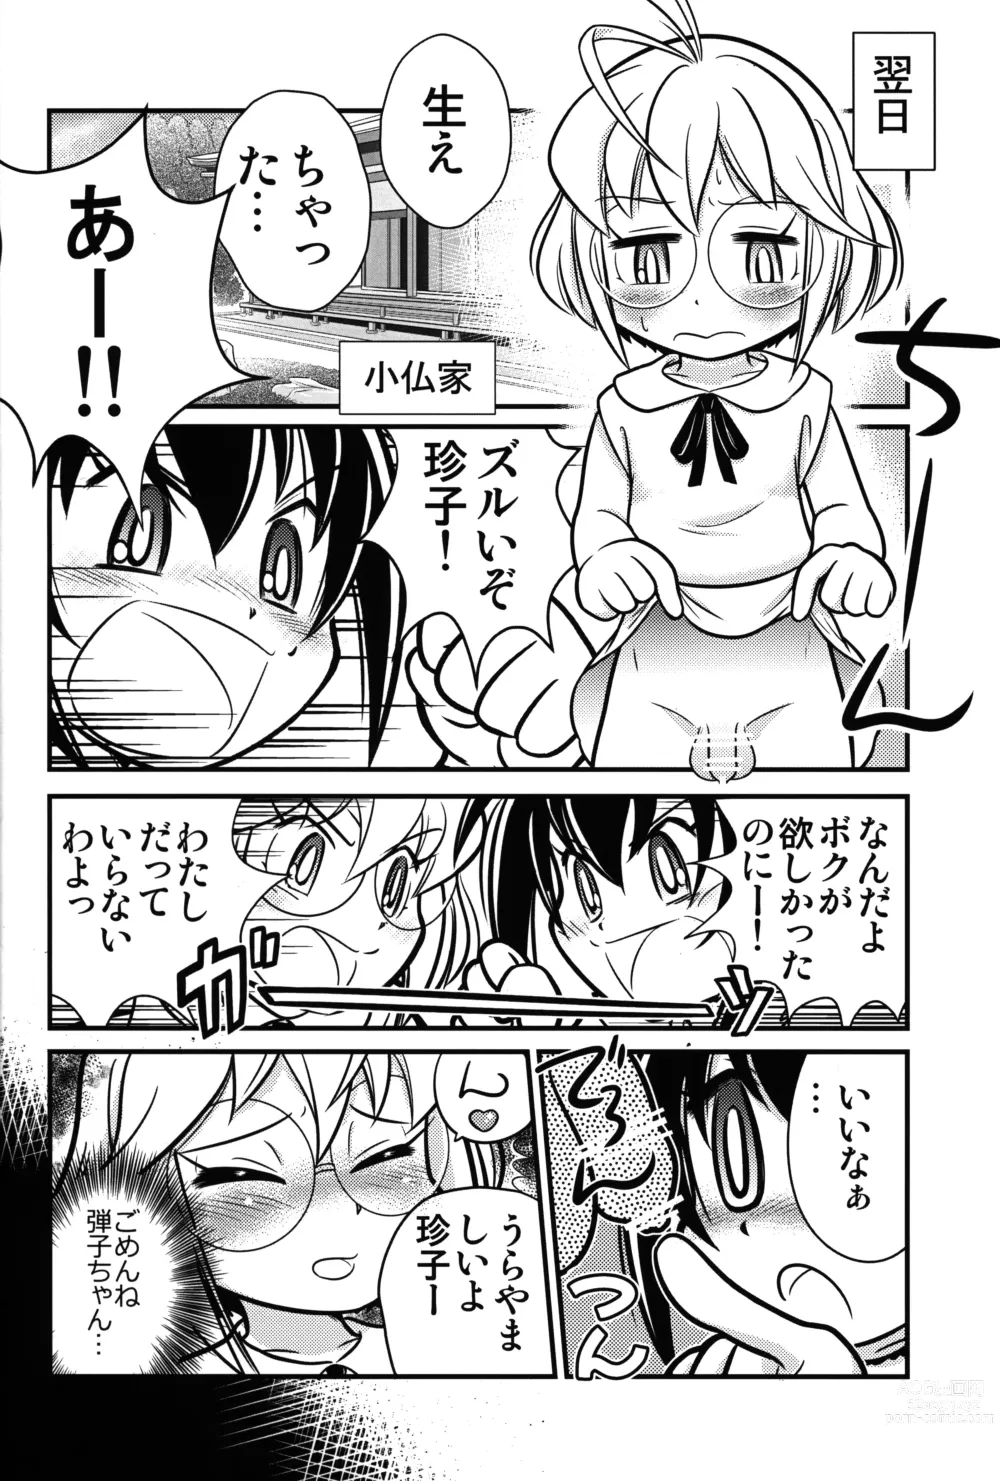 Page 7 of doujinshi Kyou no Danko 2